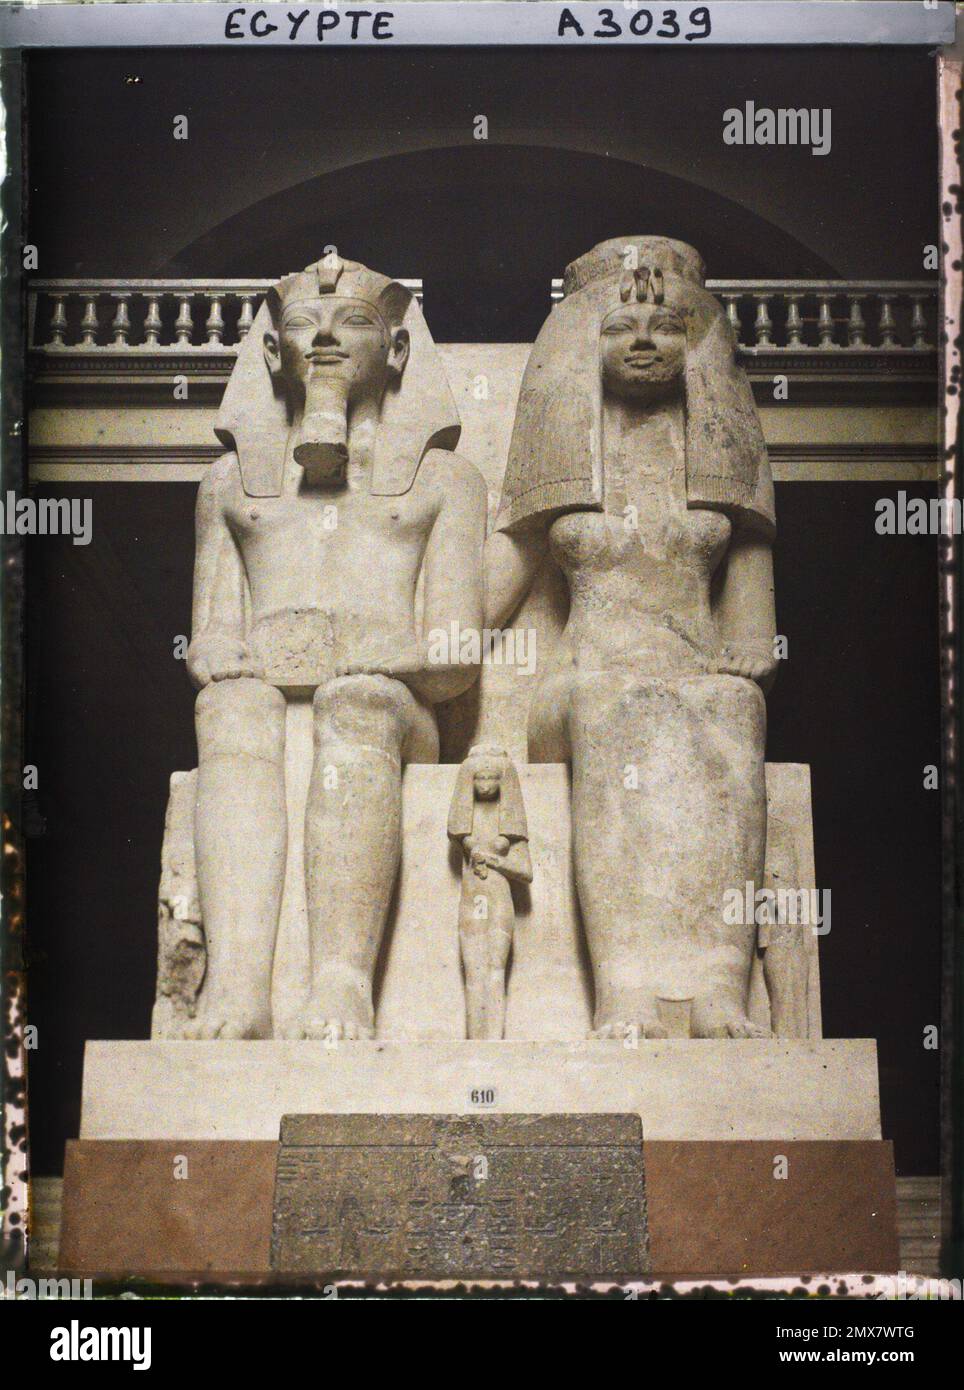 Le Caire, l'Egypte, l'Afrique Statue d'Amenophis III et Tiyi au Musée Egyptien , 1914 - Egypte - Auguste Léon - (janvier - février) Banque D'Images